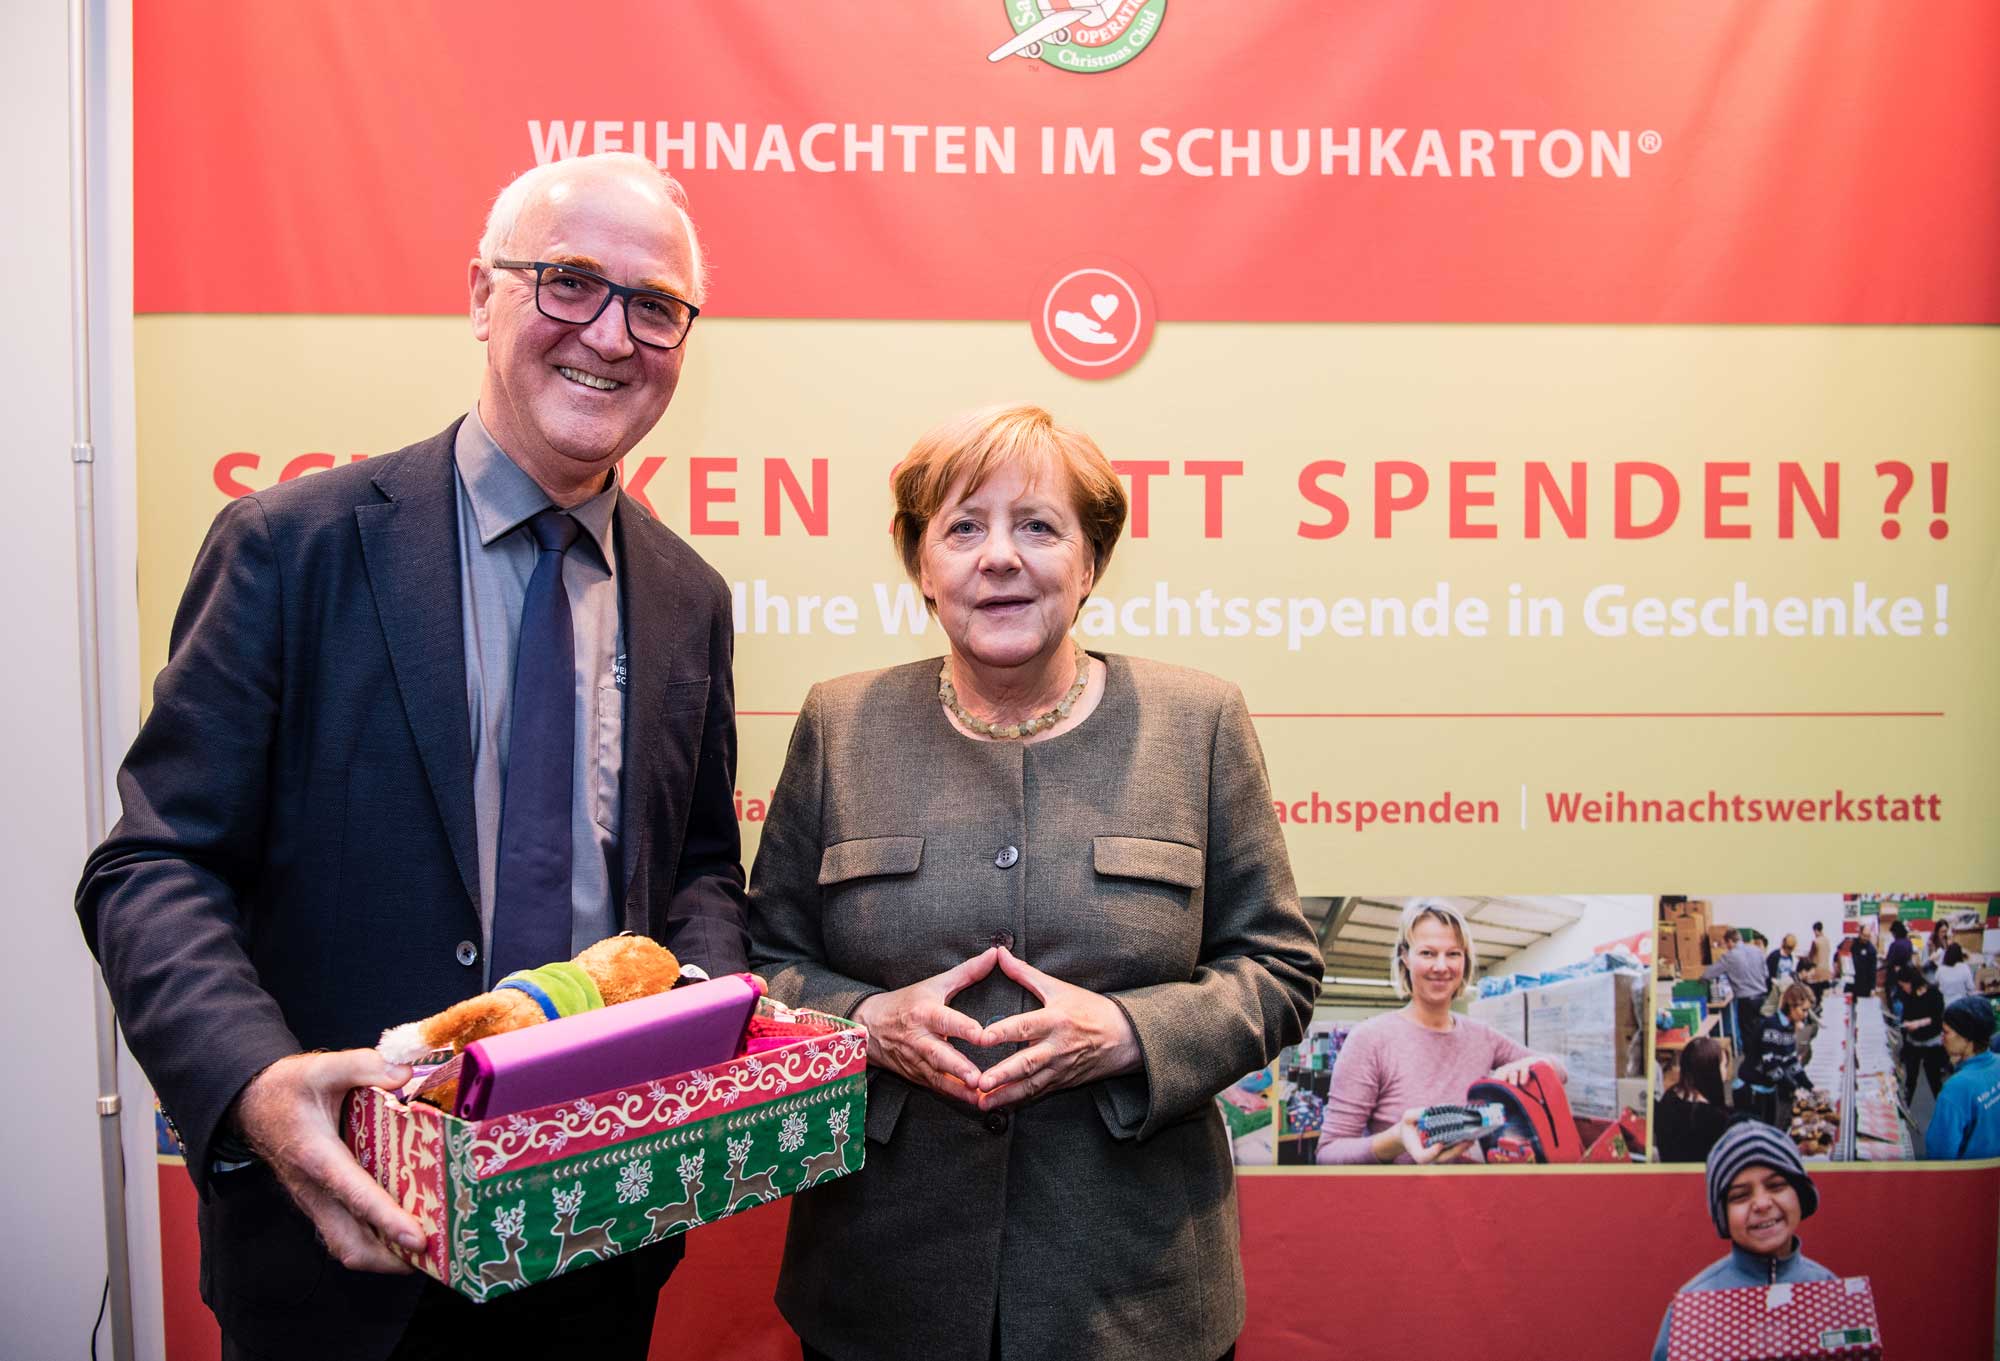 Bundeskanzlerin Angela Merkel unterstützt die Aktion "Weihnachten im Schuhkarton"